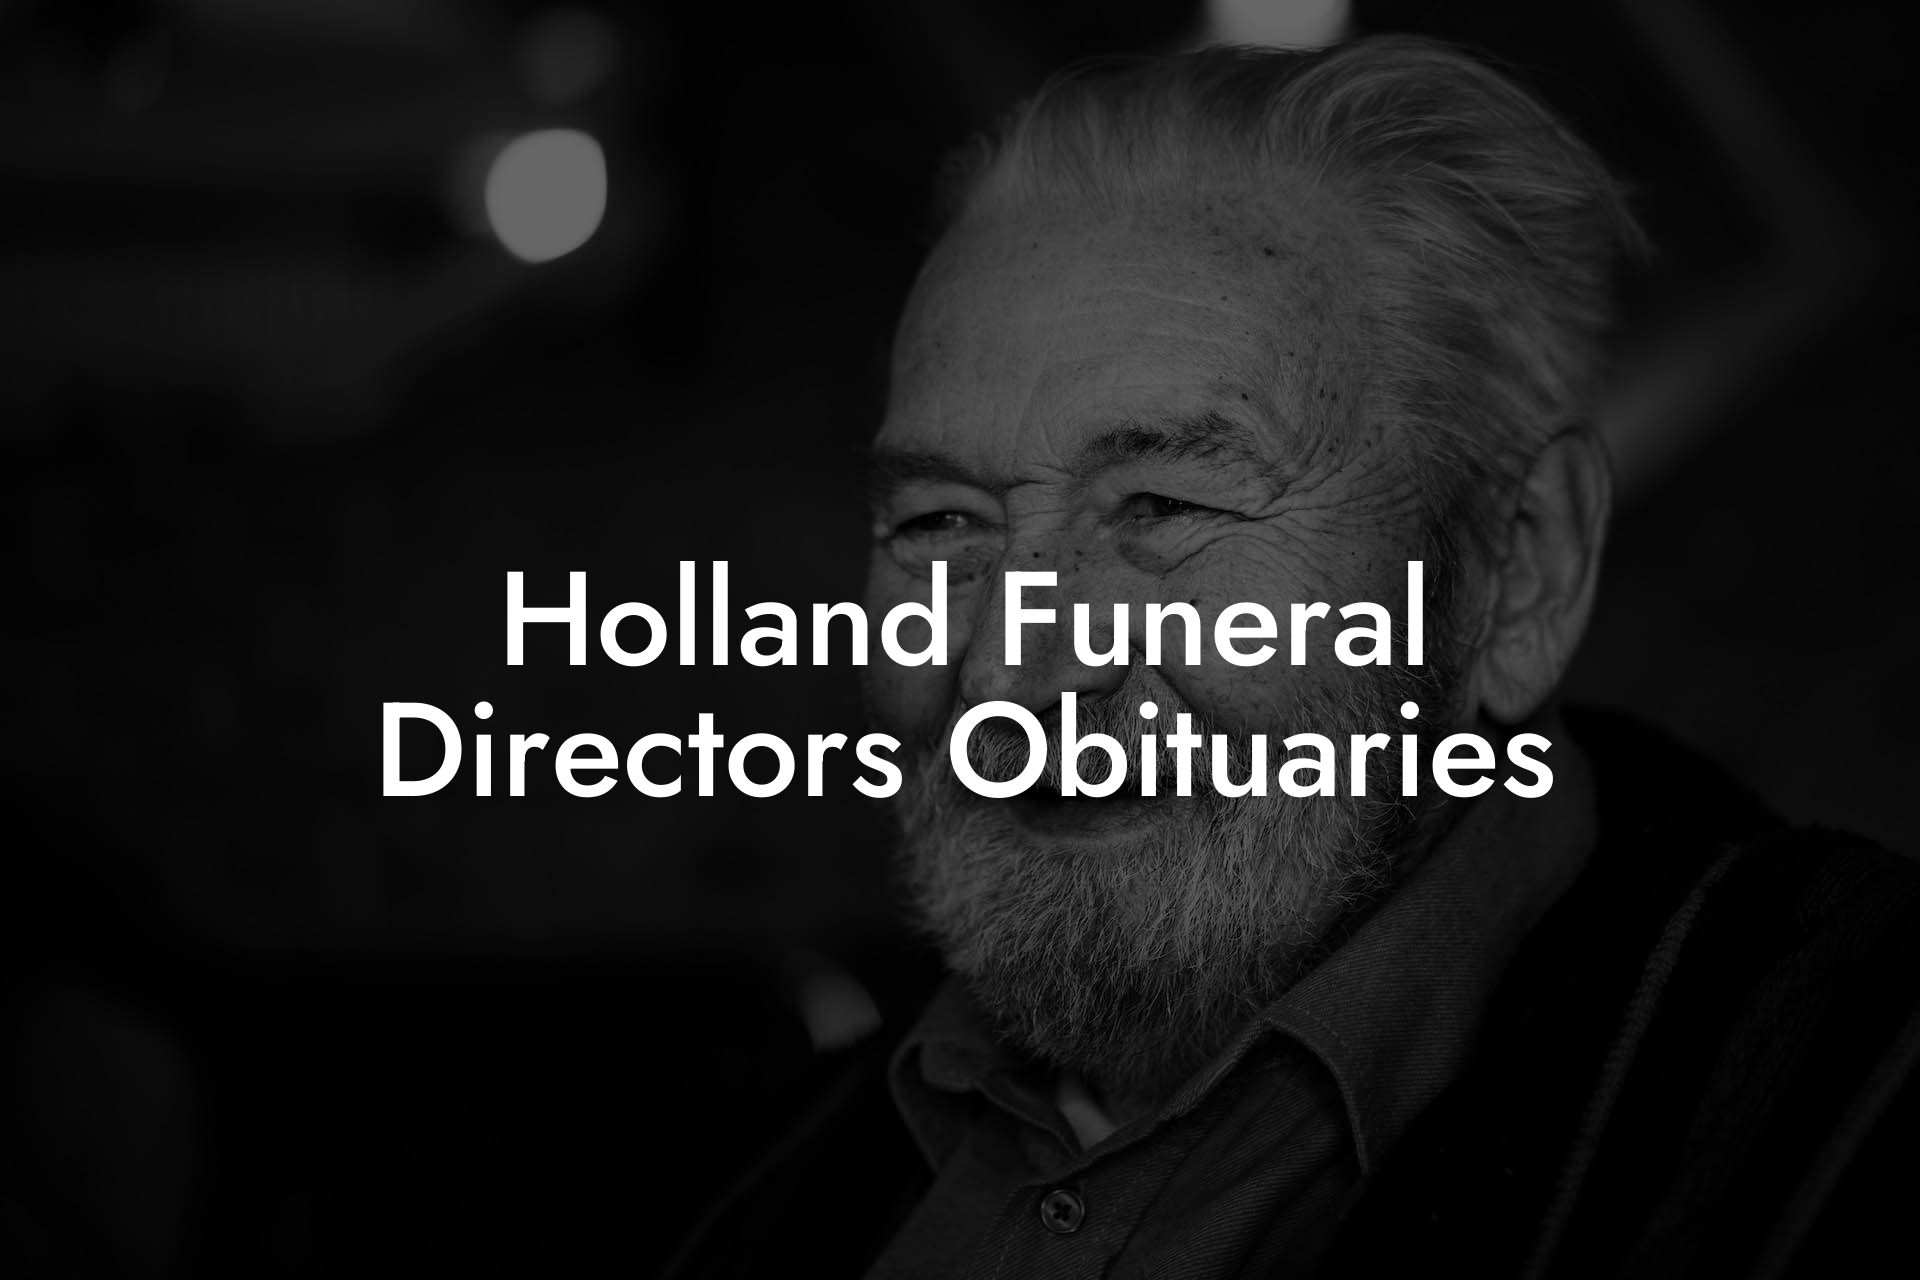 Holland Funeral Directors Obituaries